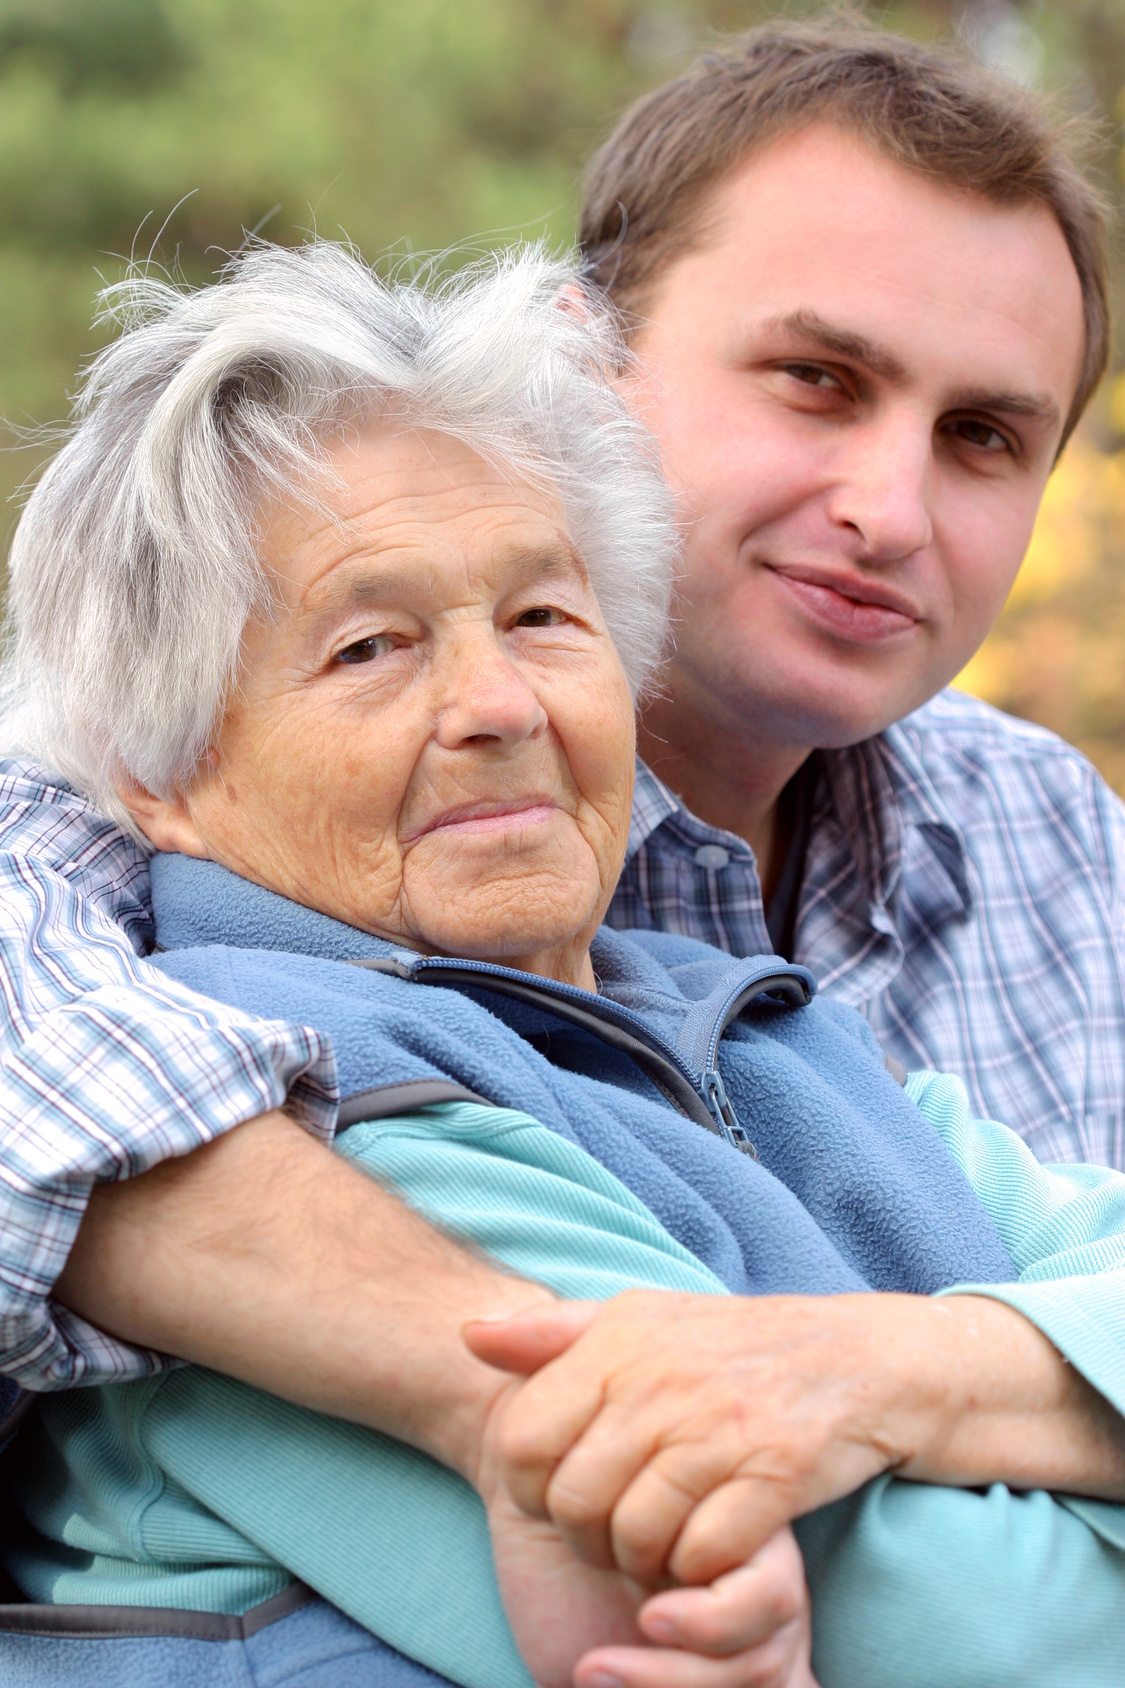 La polymédication chez les seniors : Équilibrer les bénéfices et les risques